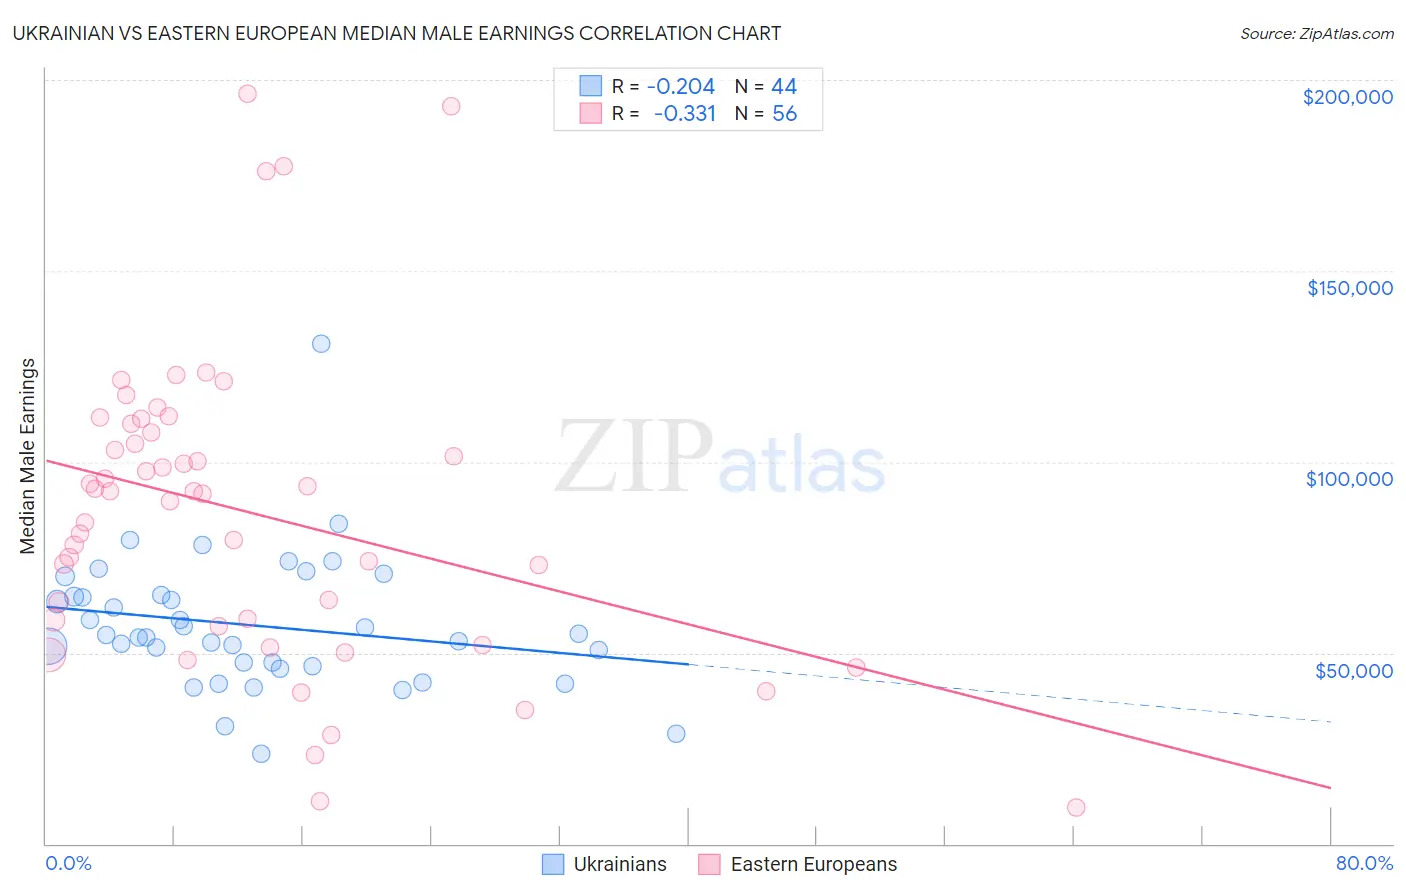 Ukrainian vs Eastern European Median Male Earnings